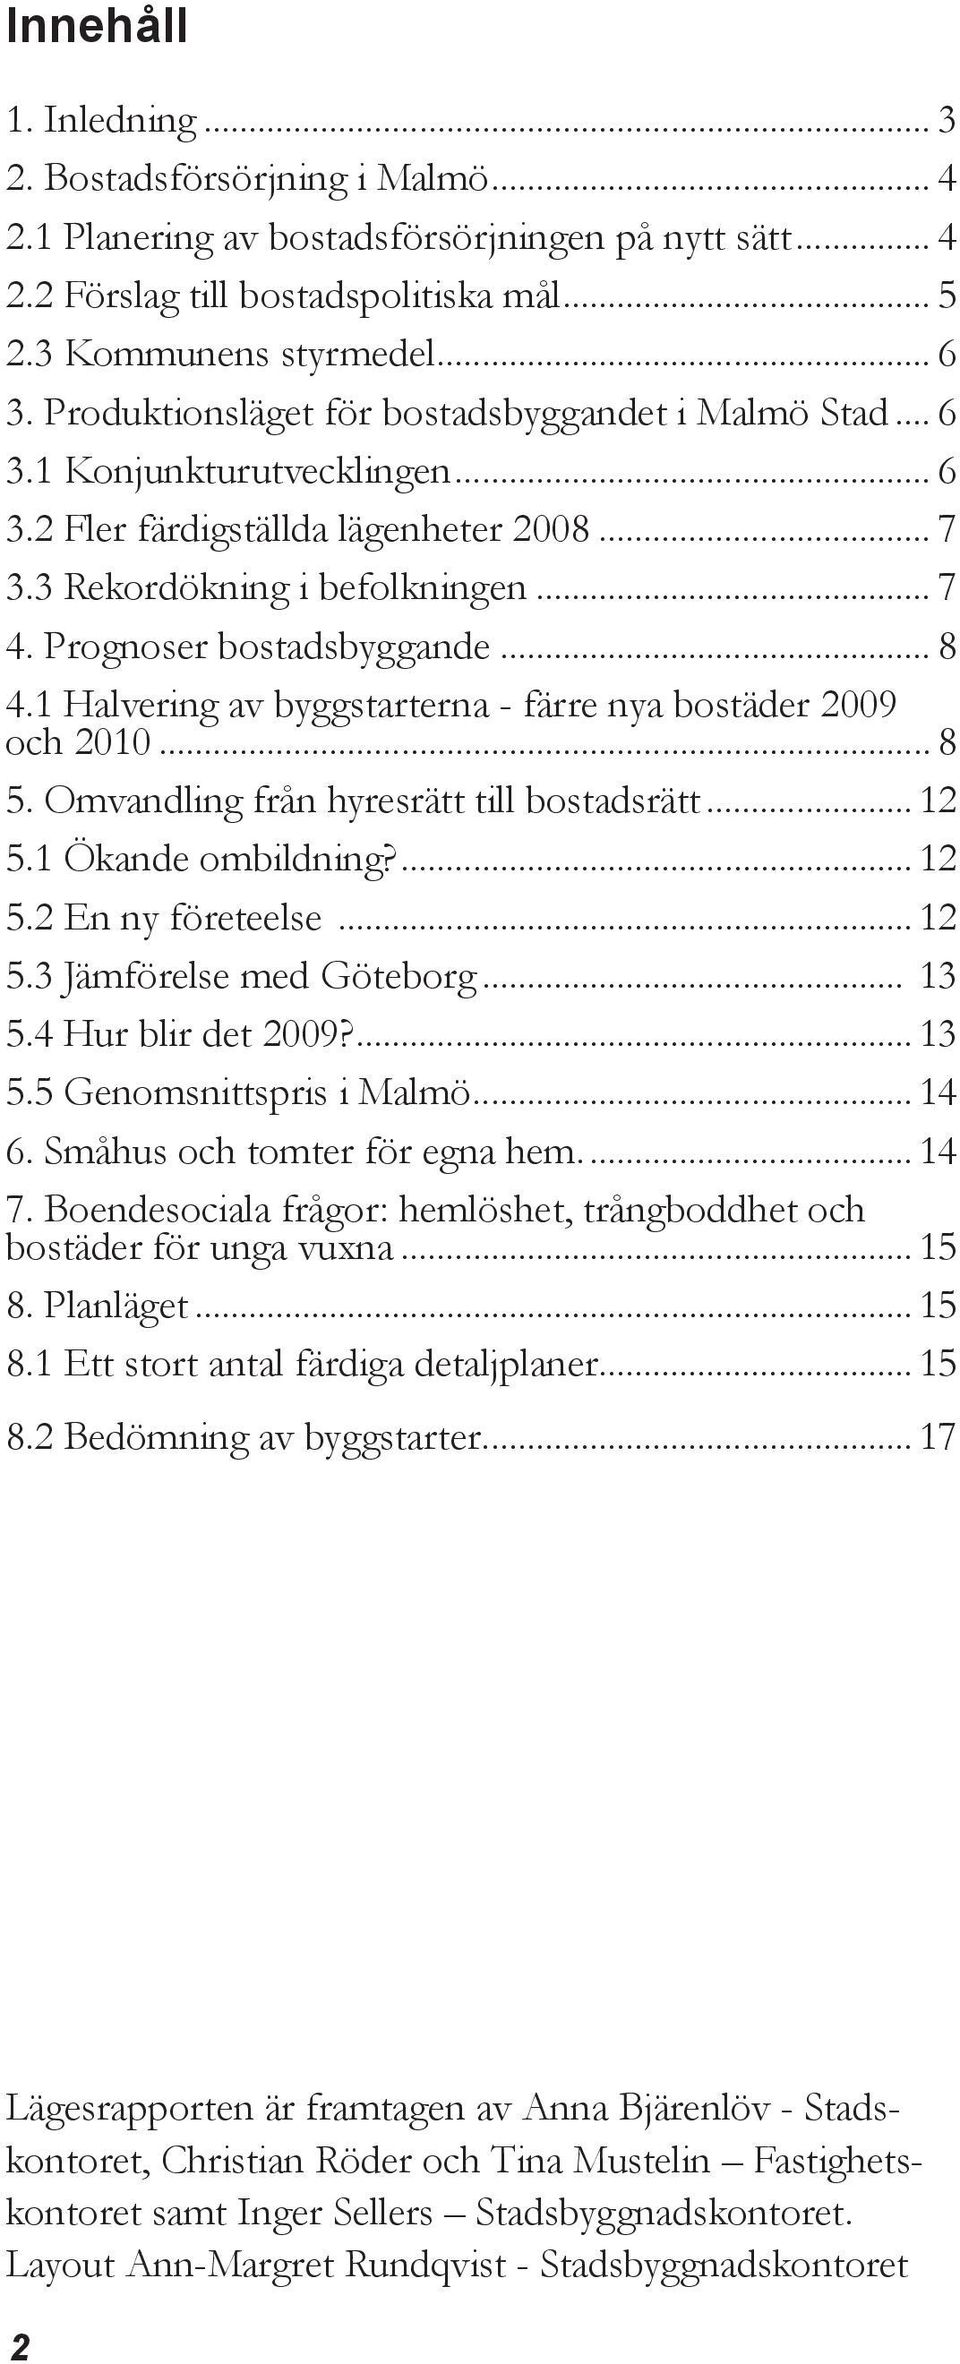 .. 8 4.1 Halvering av byggstarterna - färre nya bostäder 2009 och 2010... 8 5. Omvandling från hyresrätt till bostadsrätt... 12 5.1 Ökande ombildning?... 12 5.2 En ny företeelse... 12 5.3 Jämförelse med Göteborg.